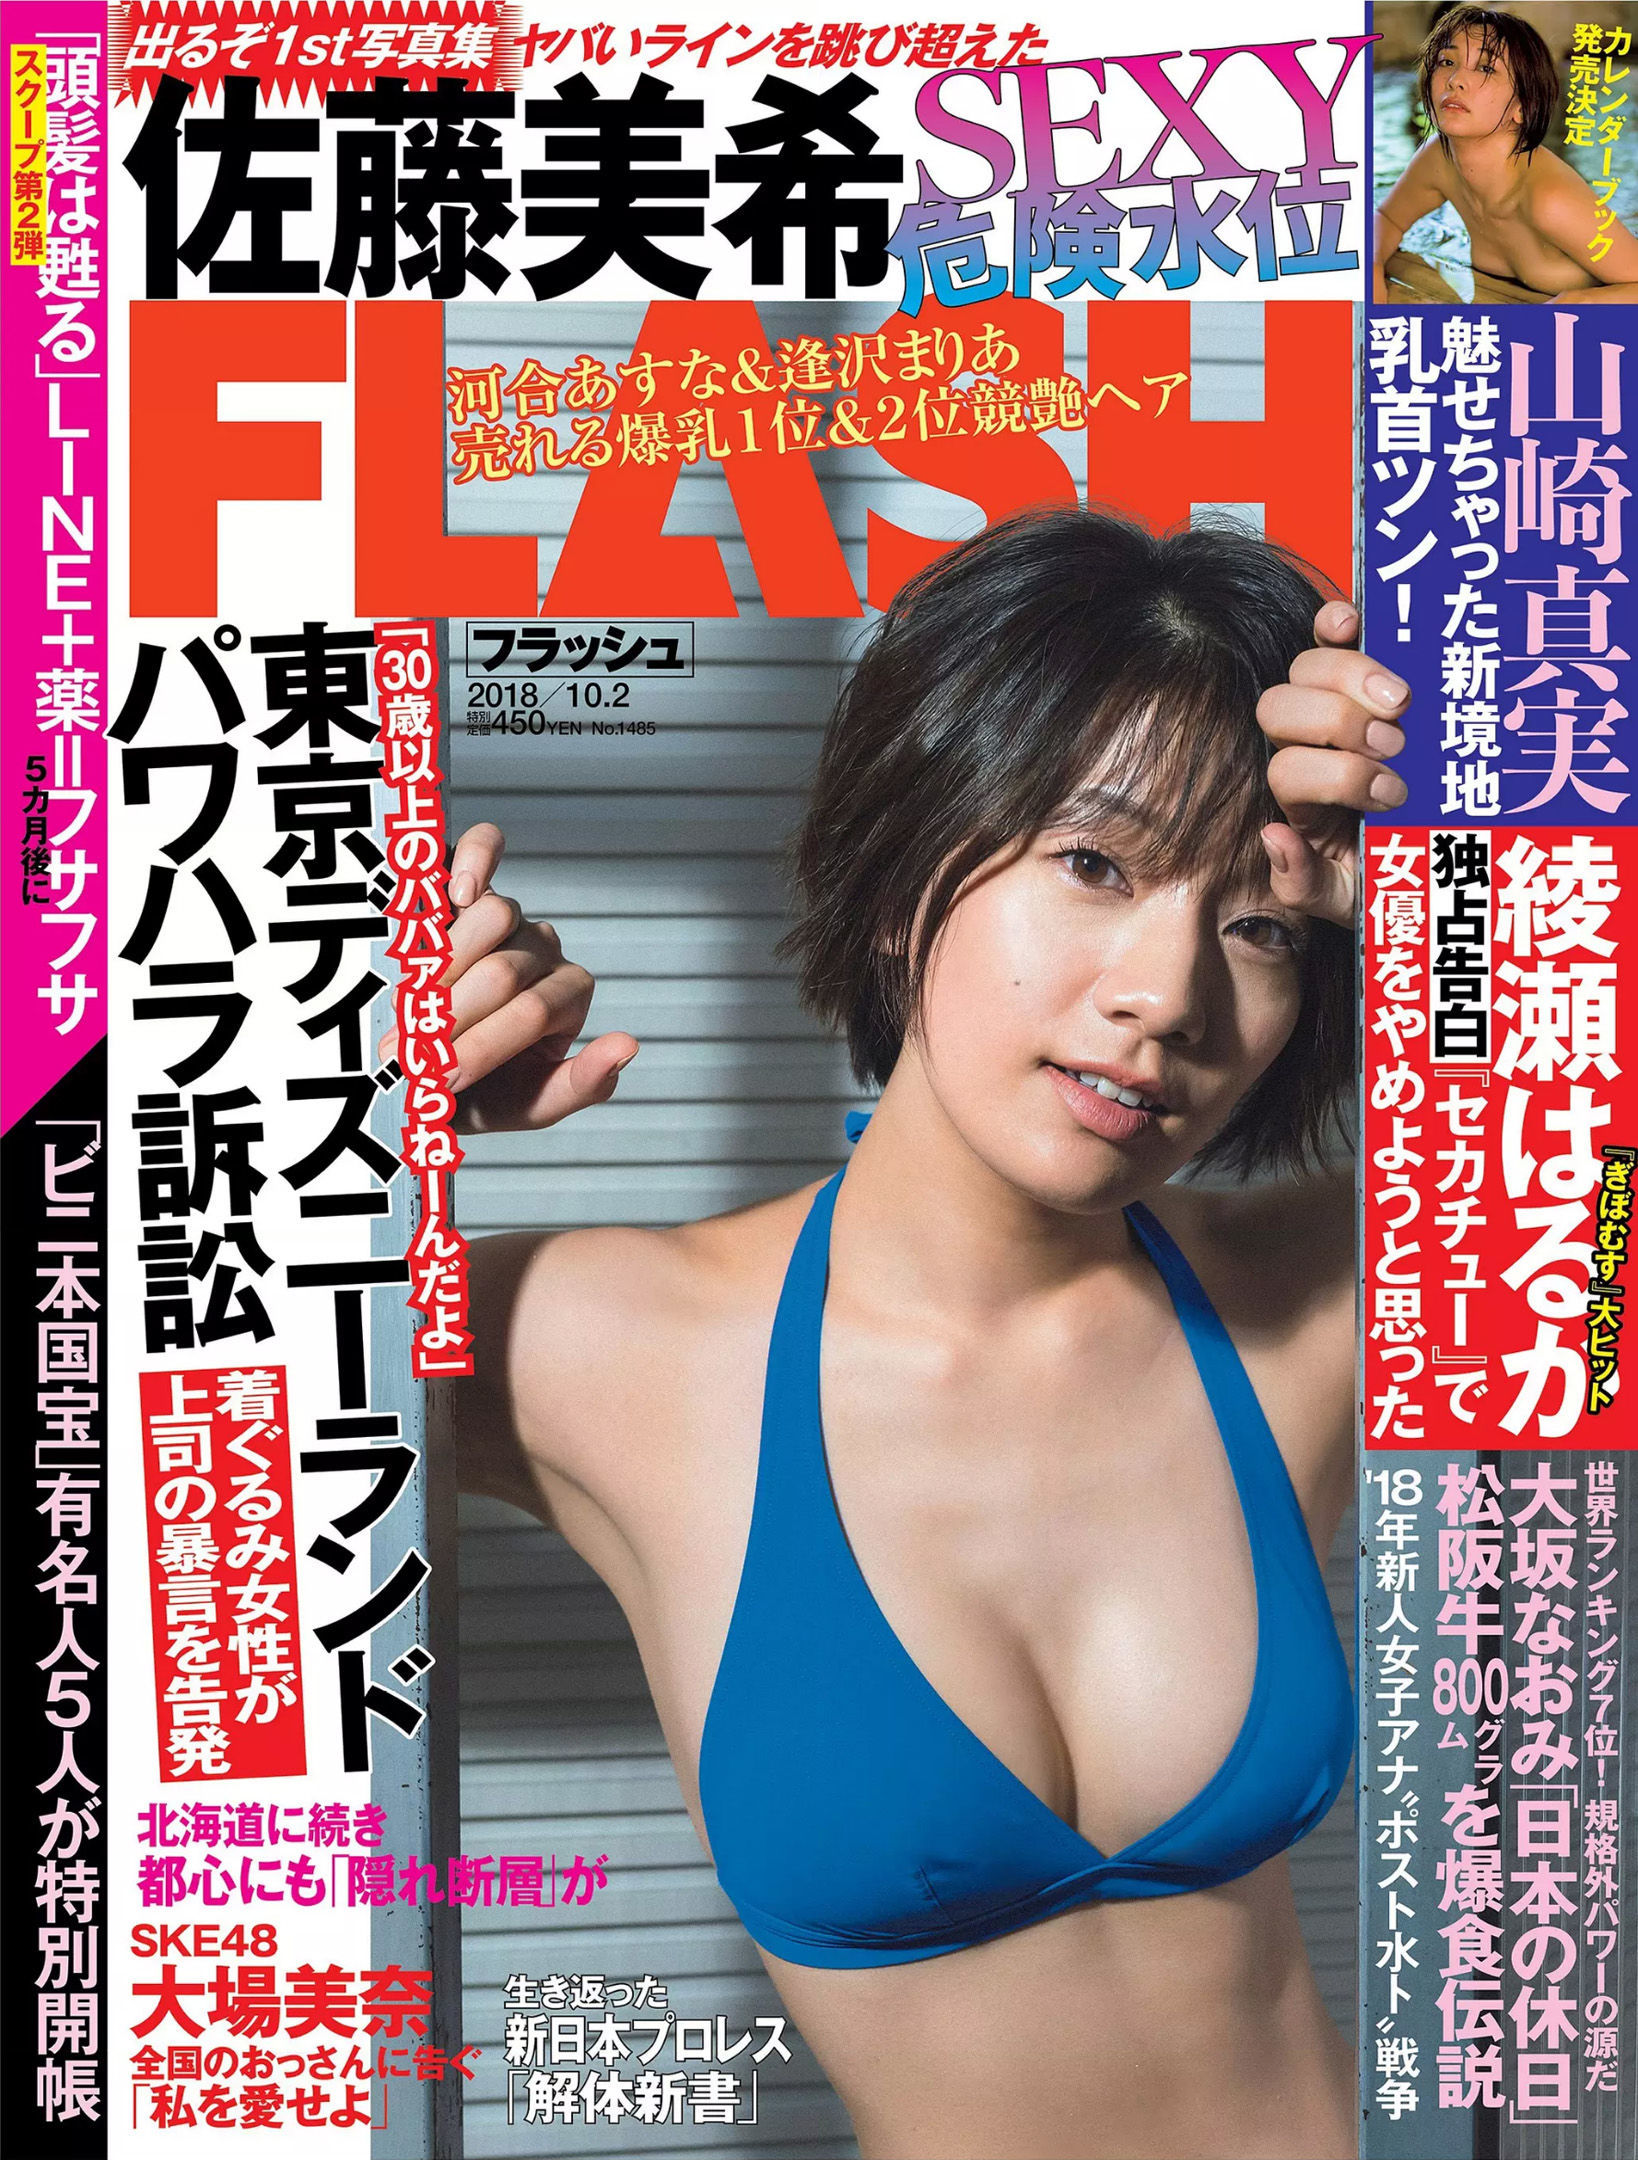 [FLASH]杂志:佐藤美希无水印写真作品免费在线(23P)